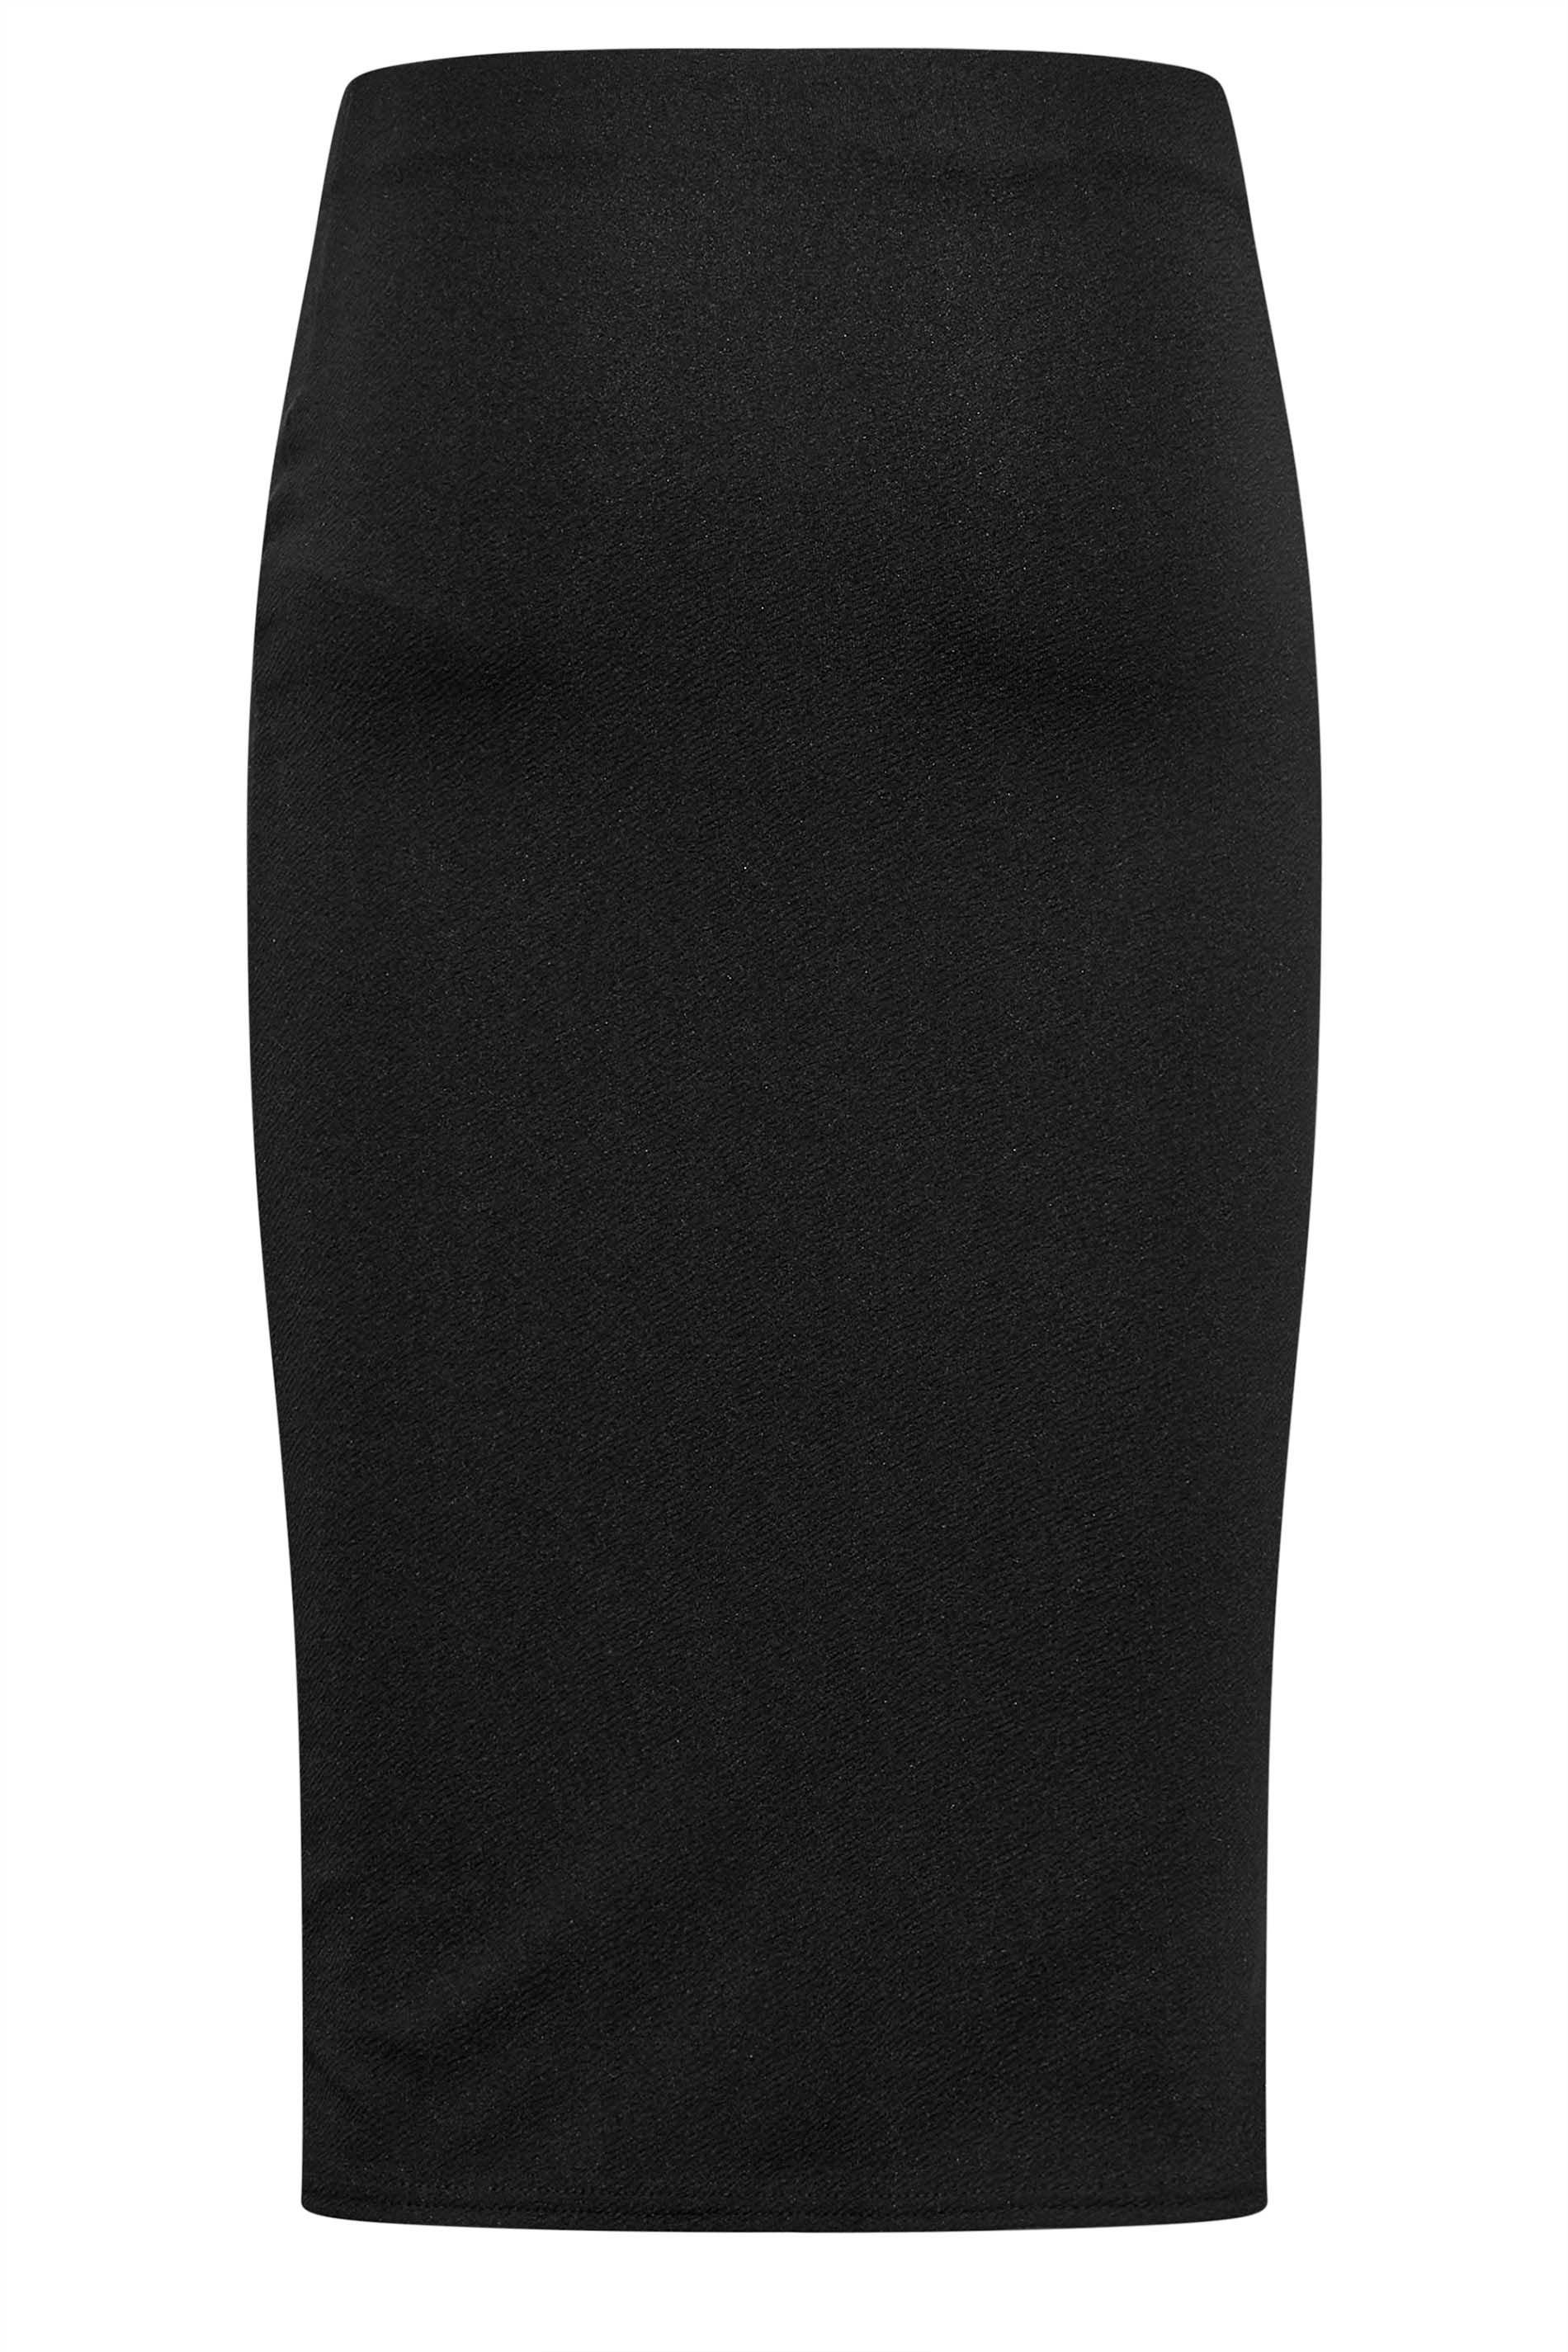 LTS Tall Black Midi Pencil Skirt | Long Tall Sally